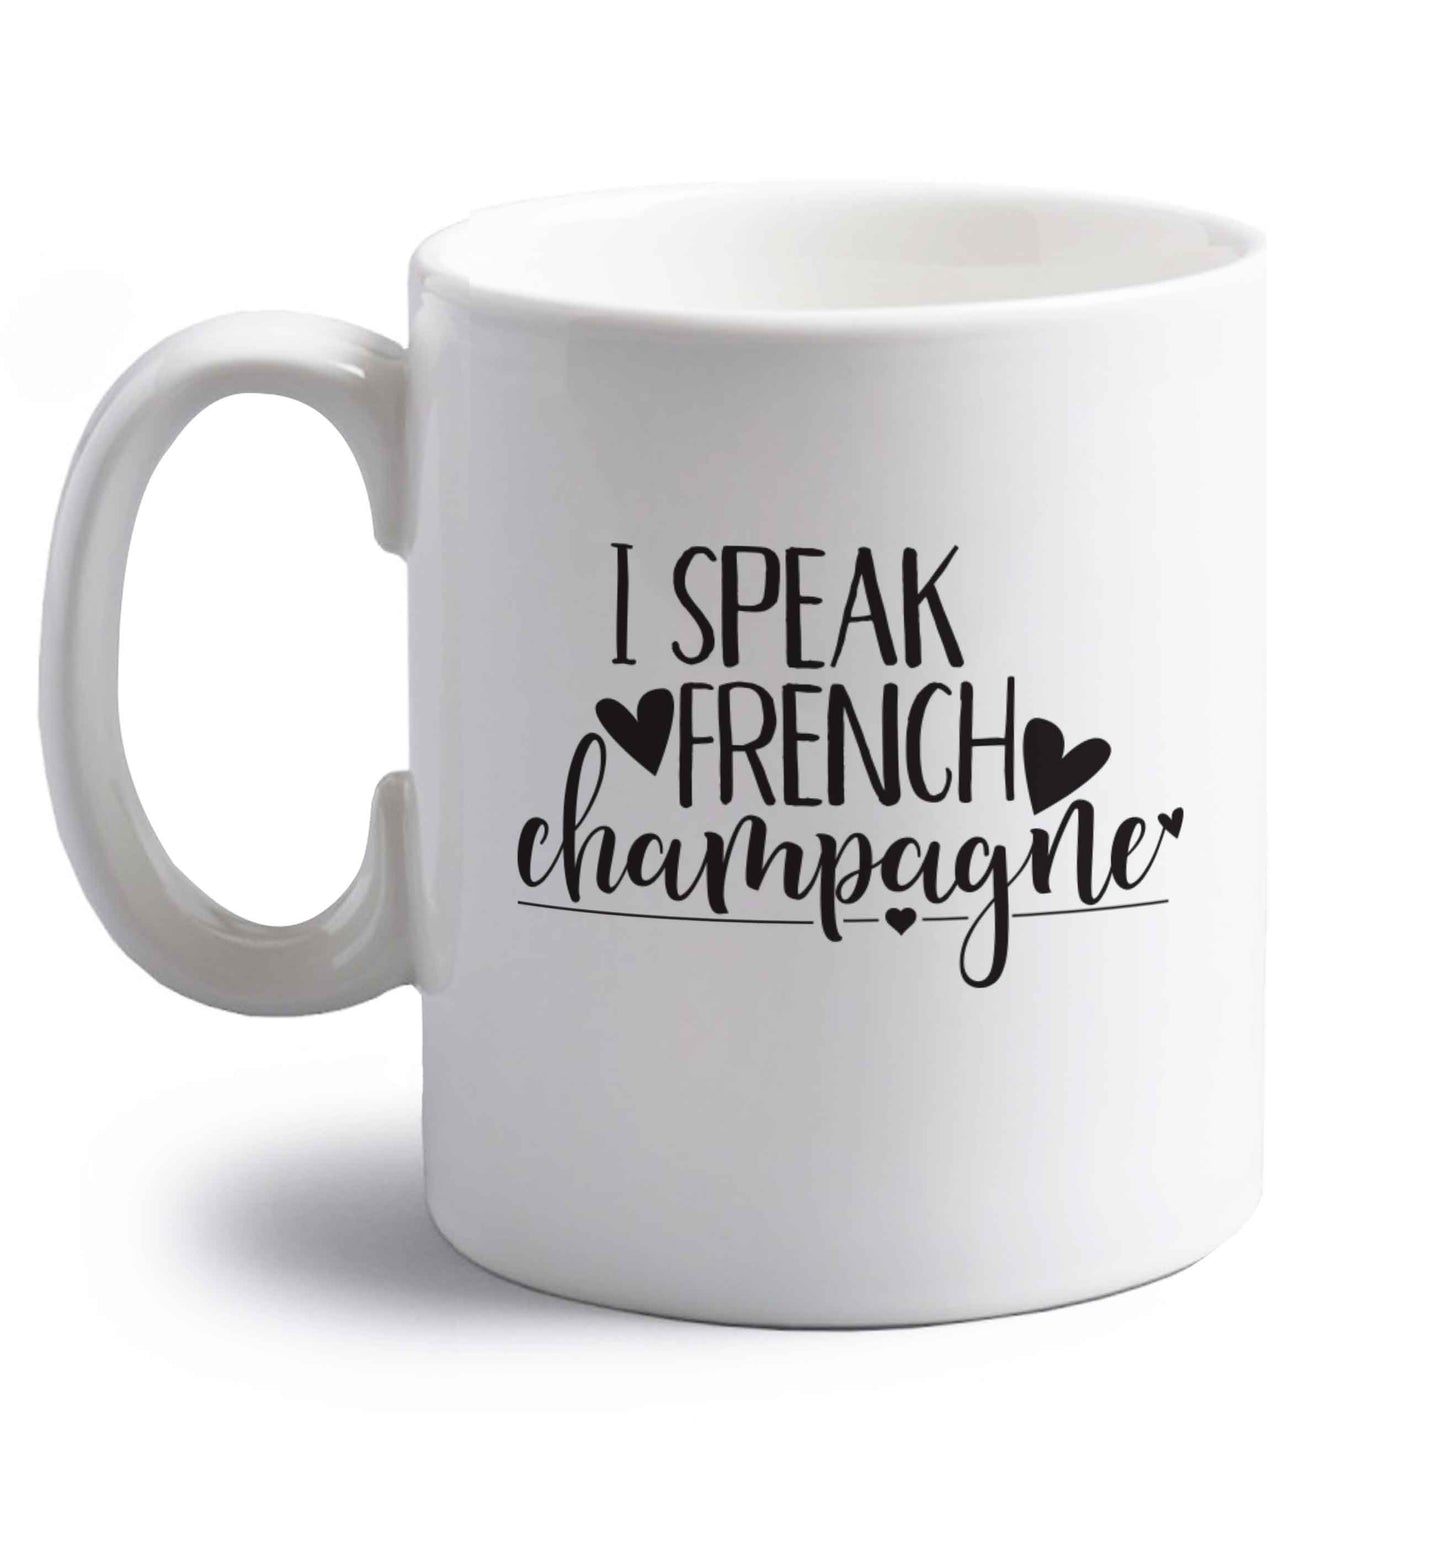 I speak french champagne right handed white ceramic mug 